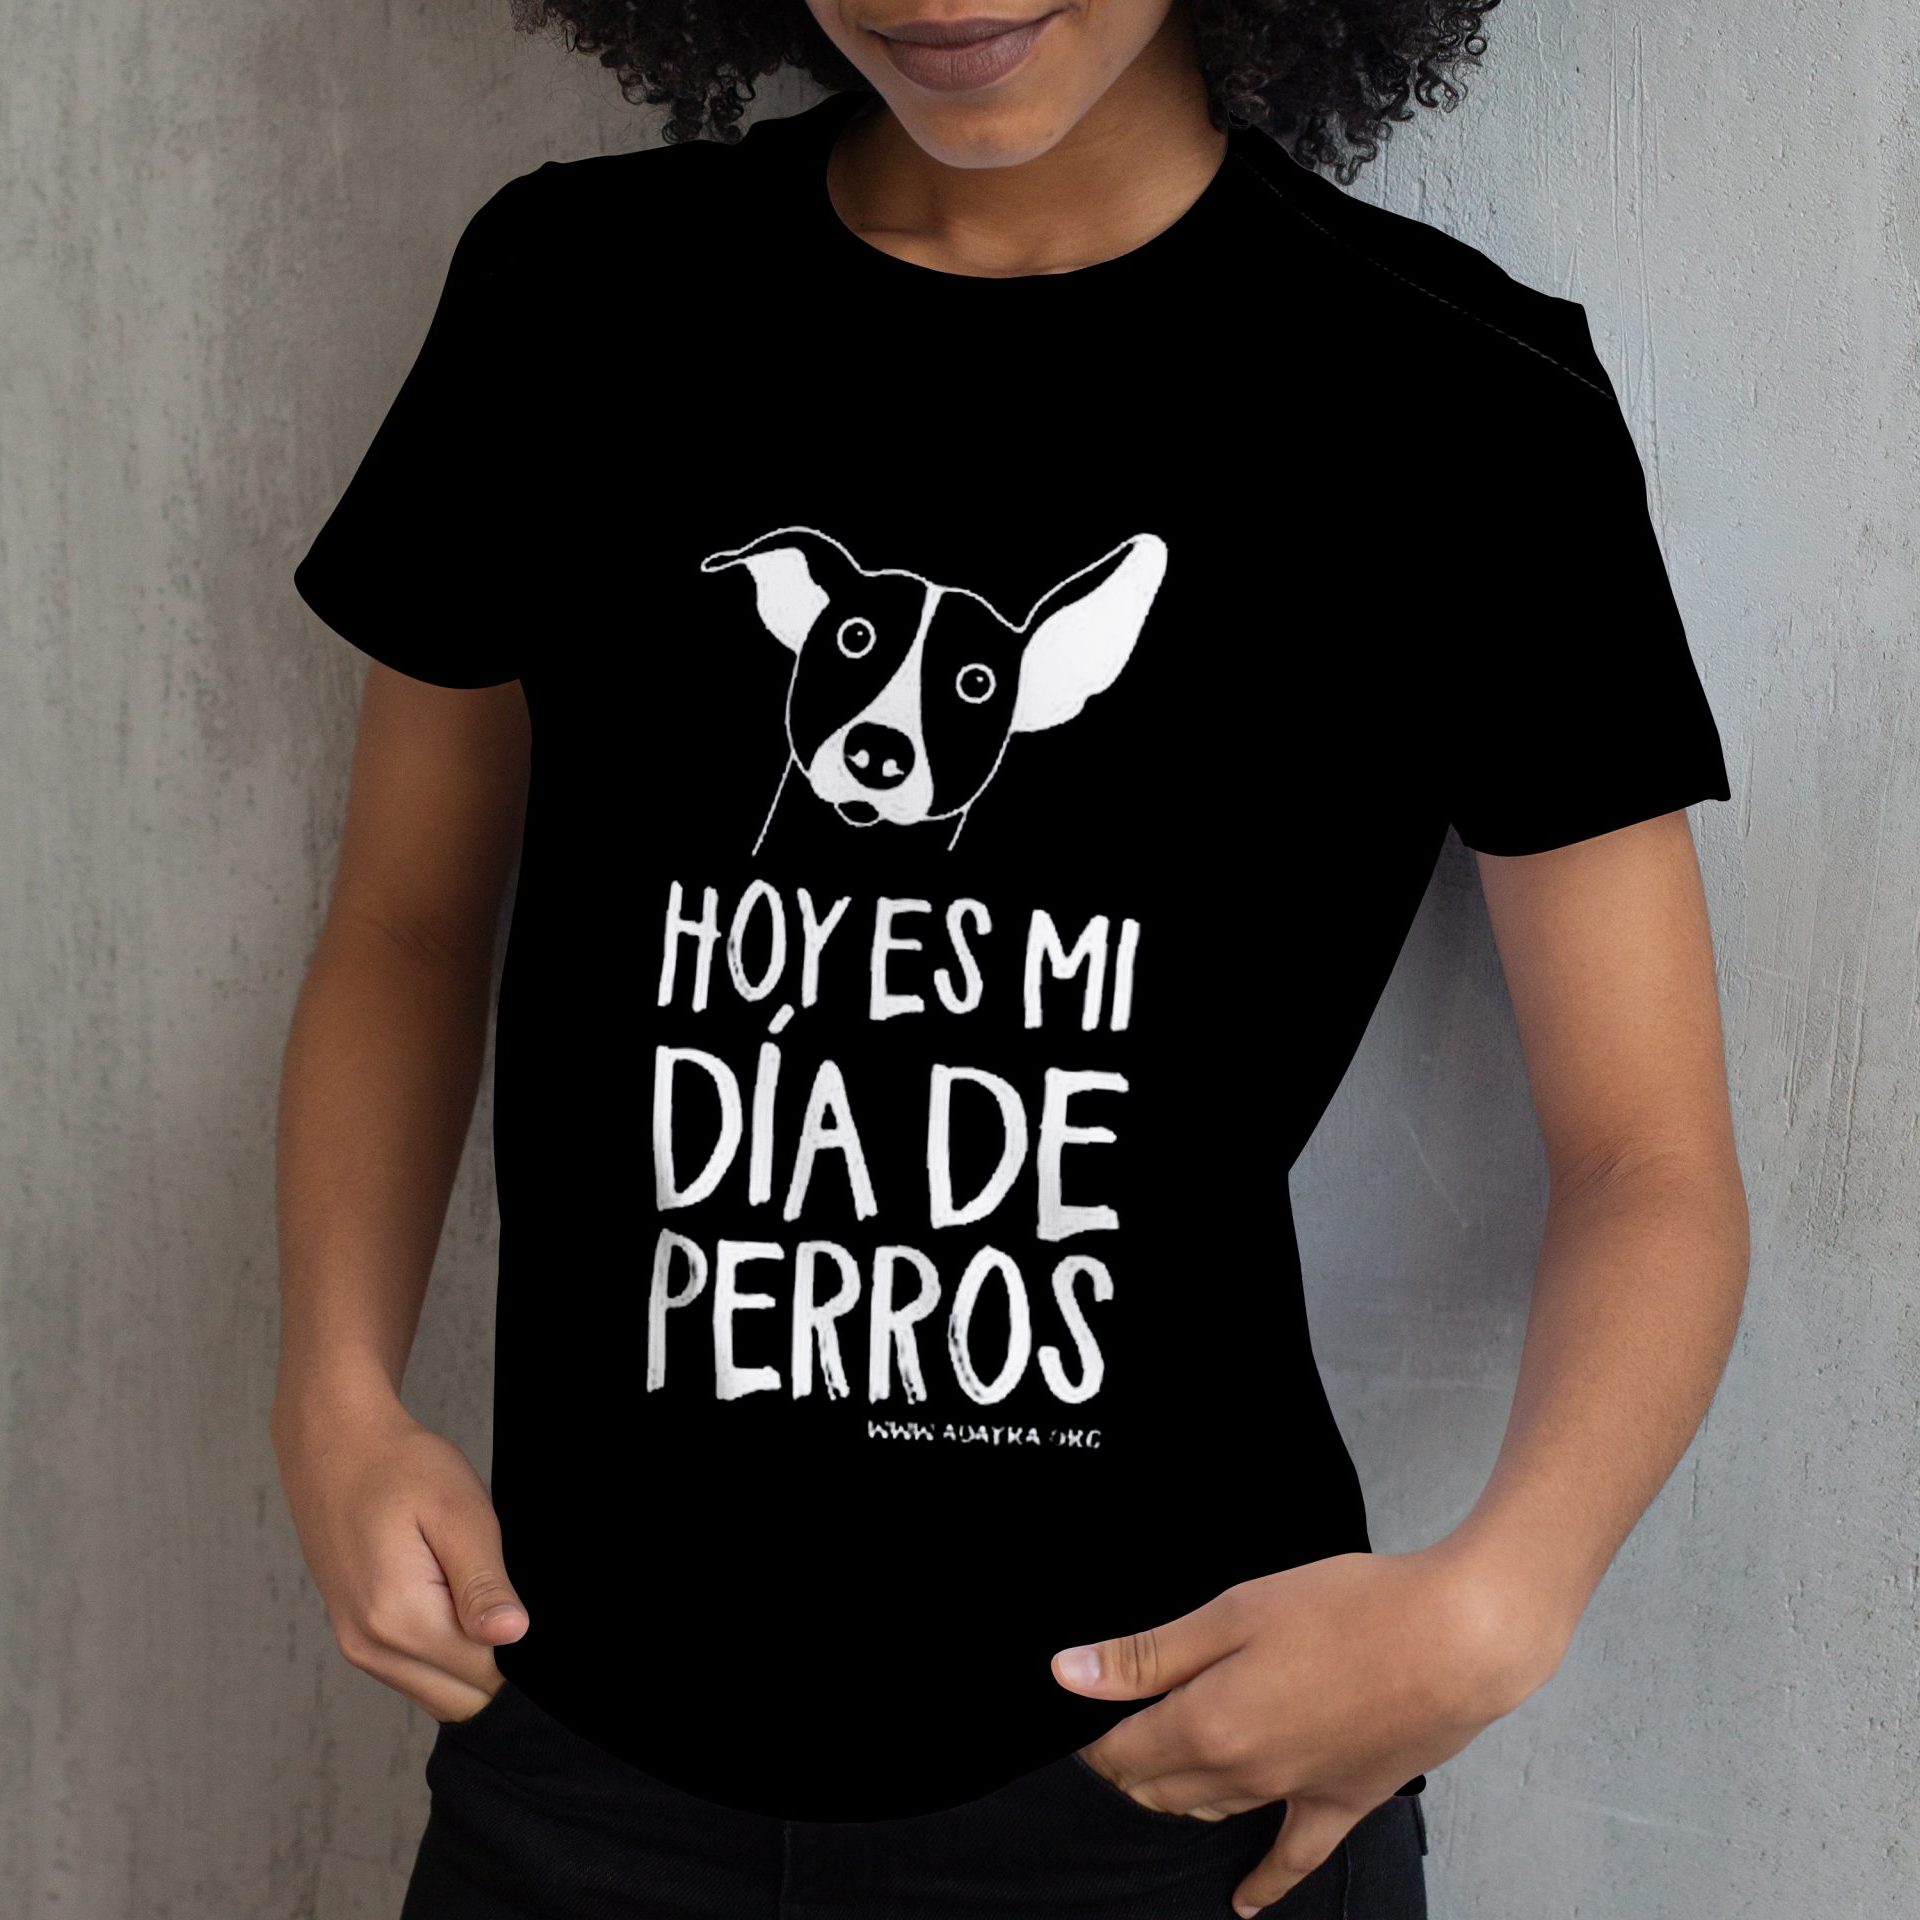 Camiseta de mujer "Hoy es mi día de perros"